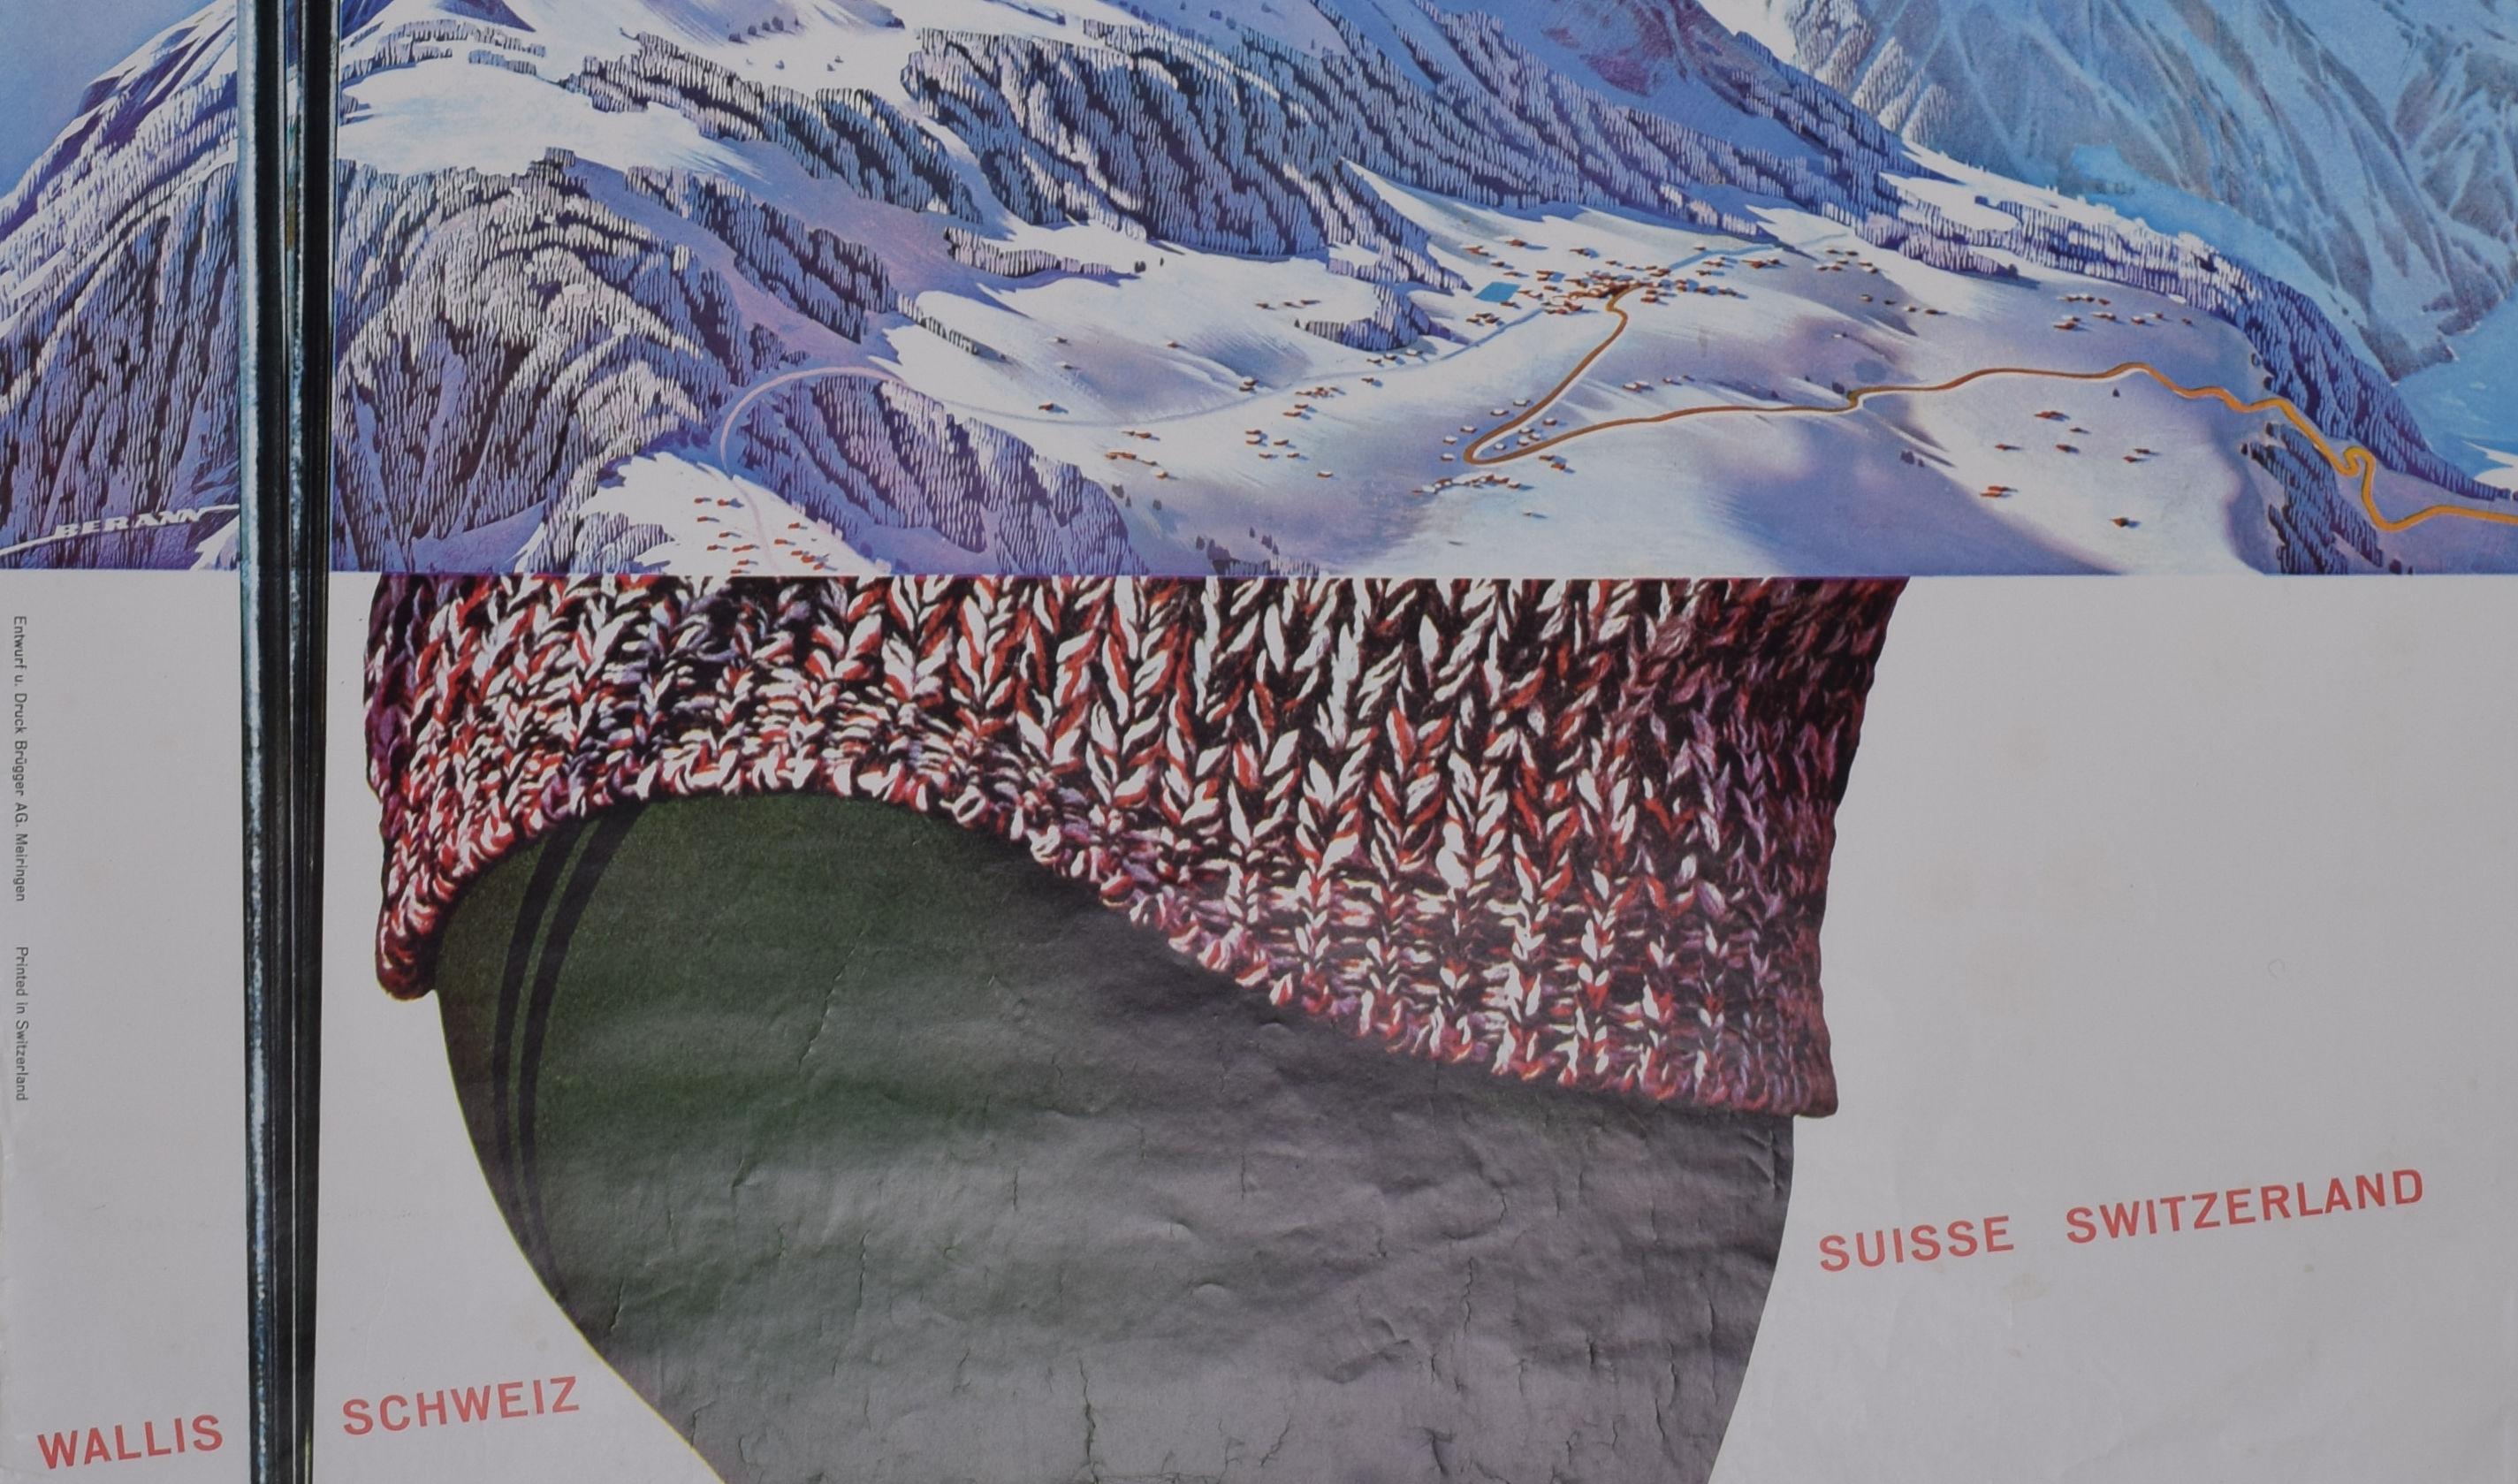 Grächen, Valais / Wallis, Switzerland original vintage skiing poster For Sale 3